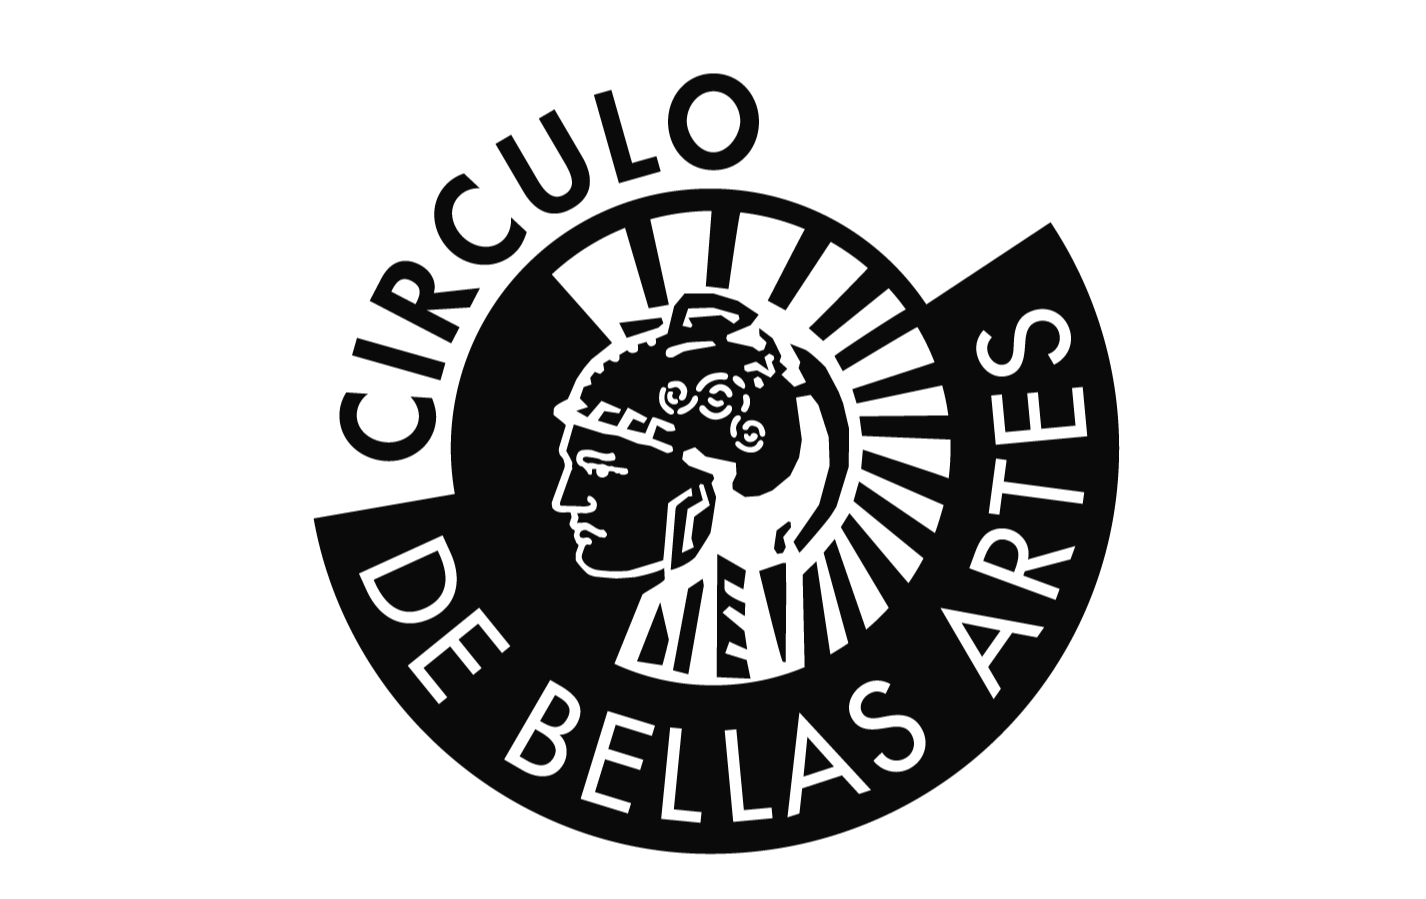 Logo círculo de bellas artes 